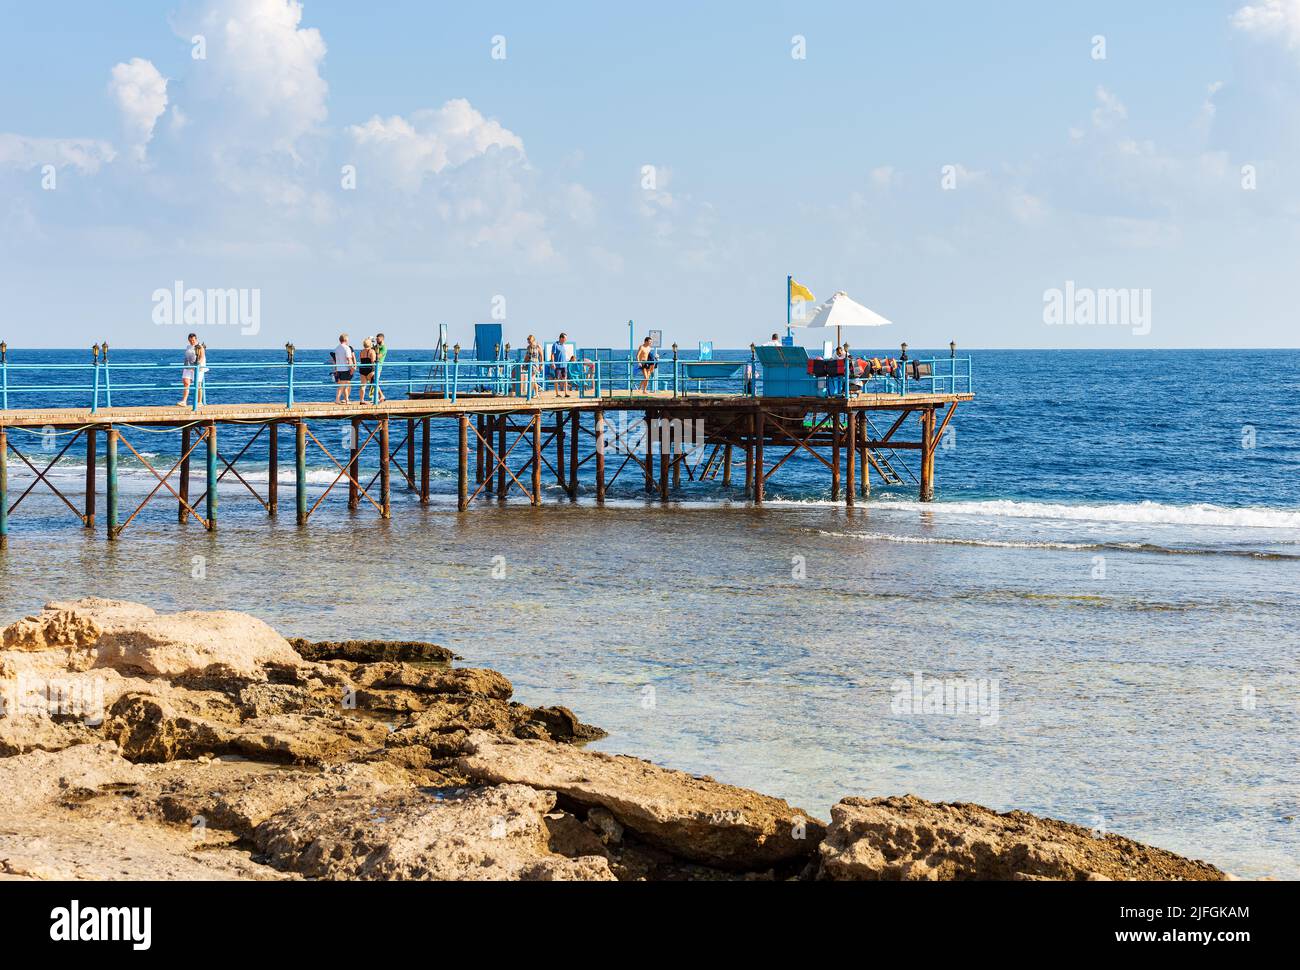 Meereslandschaft des Roten Meeres bei Marsa Alam, Ägypten, Afrika. Pier über dem Korallenriff zum Tauchen, Schnorcheln und Schwimmen mit einer Gruppe von Touristen. Stockfoto